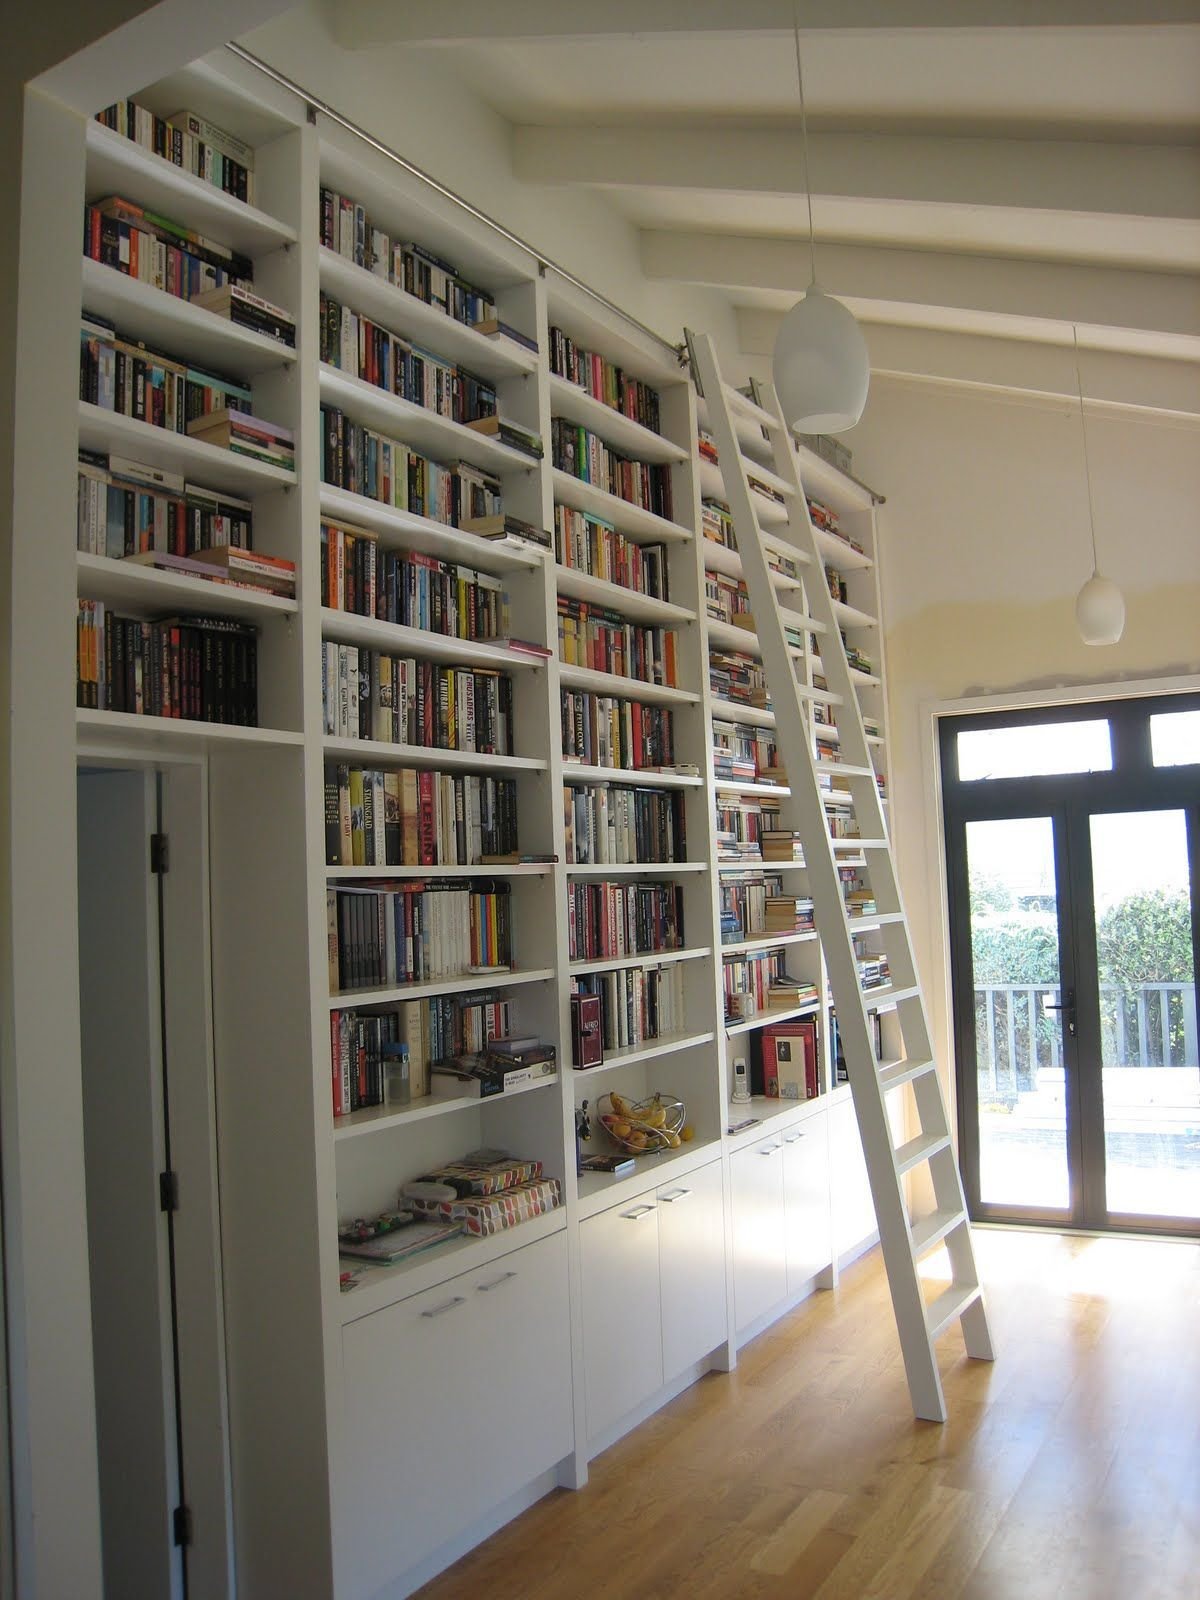 Стеллаж до потолка. Стеллаж во всю стену. Стеллаж книжный. Книжный стеллаж до потолка. Книжные шкафы под потолок.